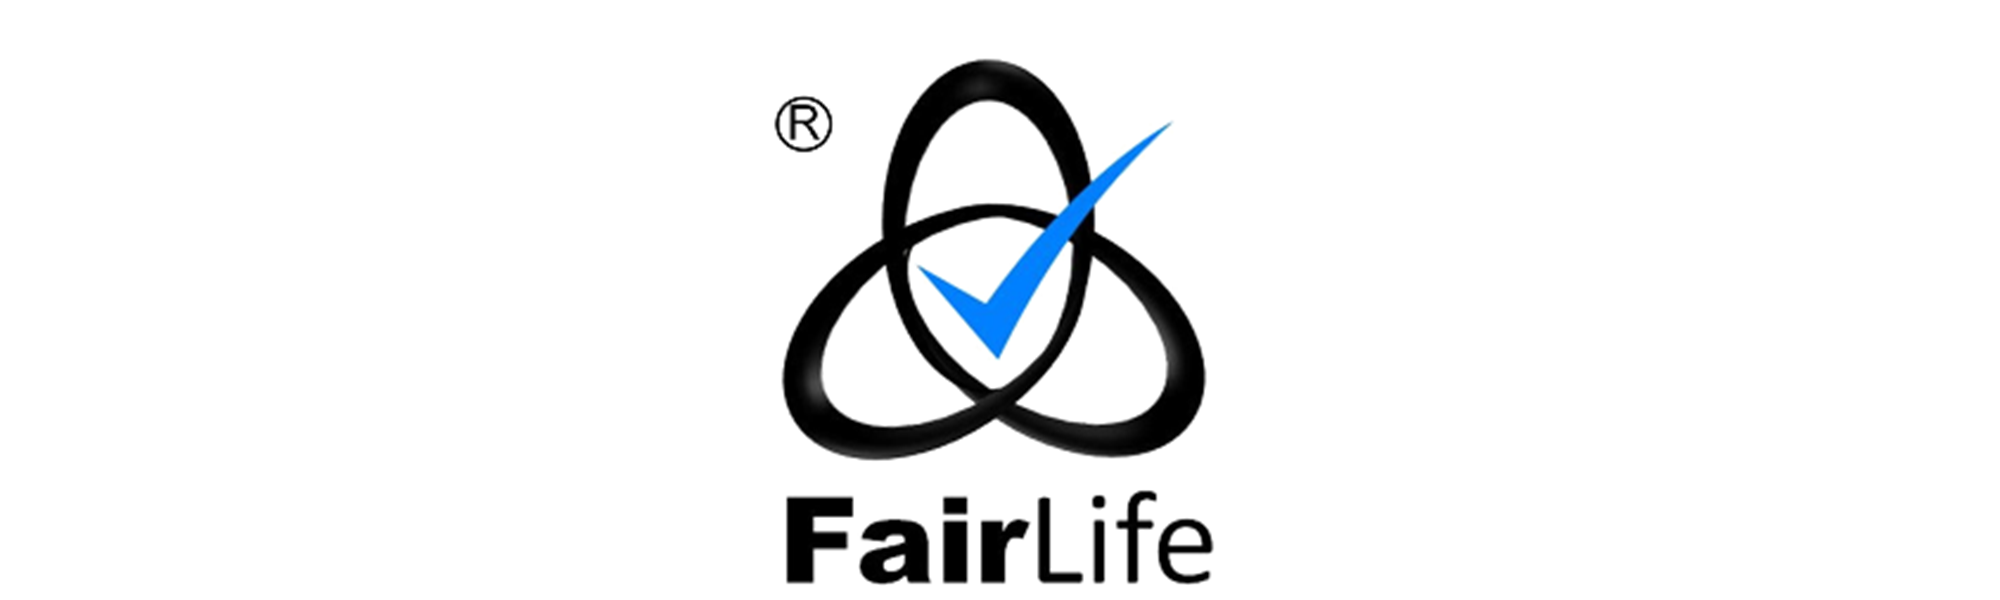 Background image: Scottish Building Society Awarded the FairLife Mark 